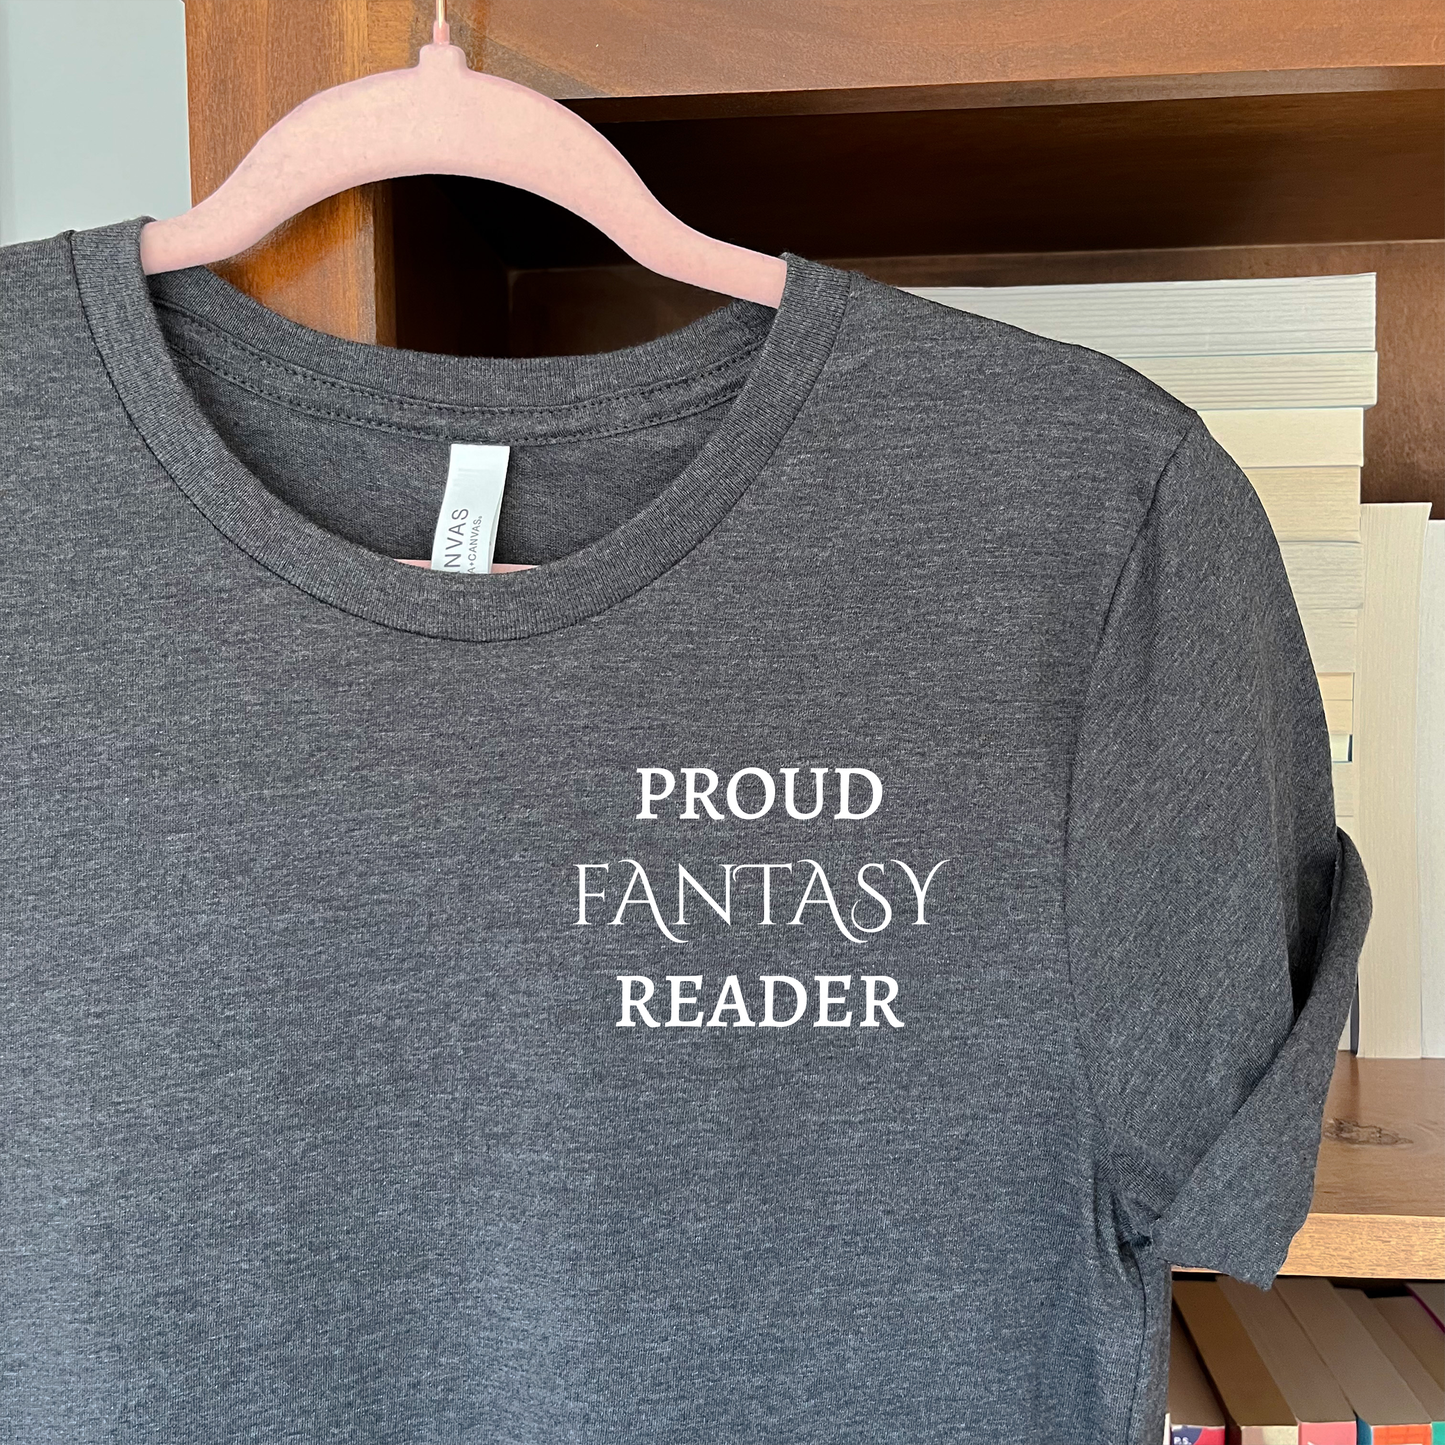 Proud Fantasy Reader T-shirt